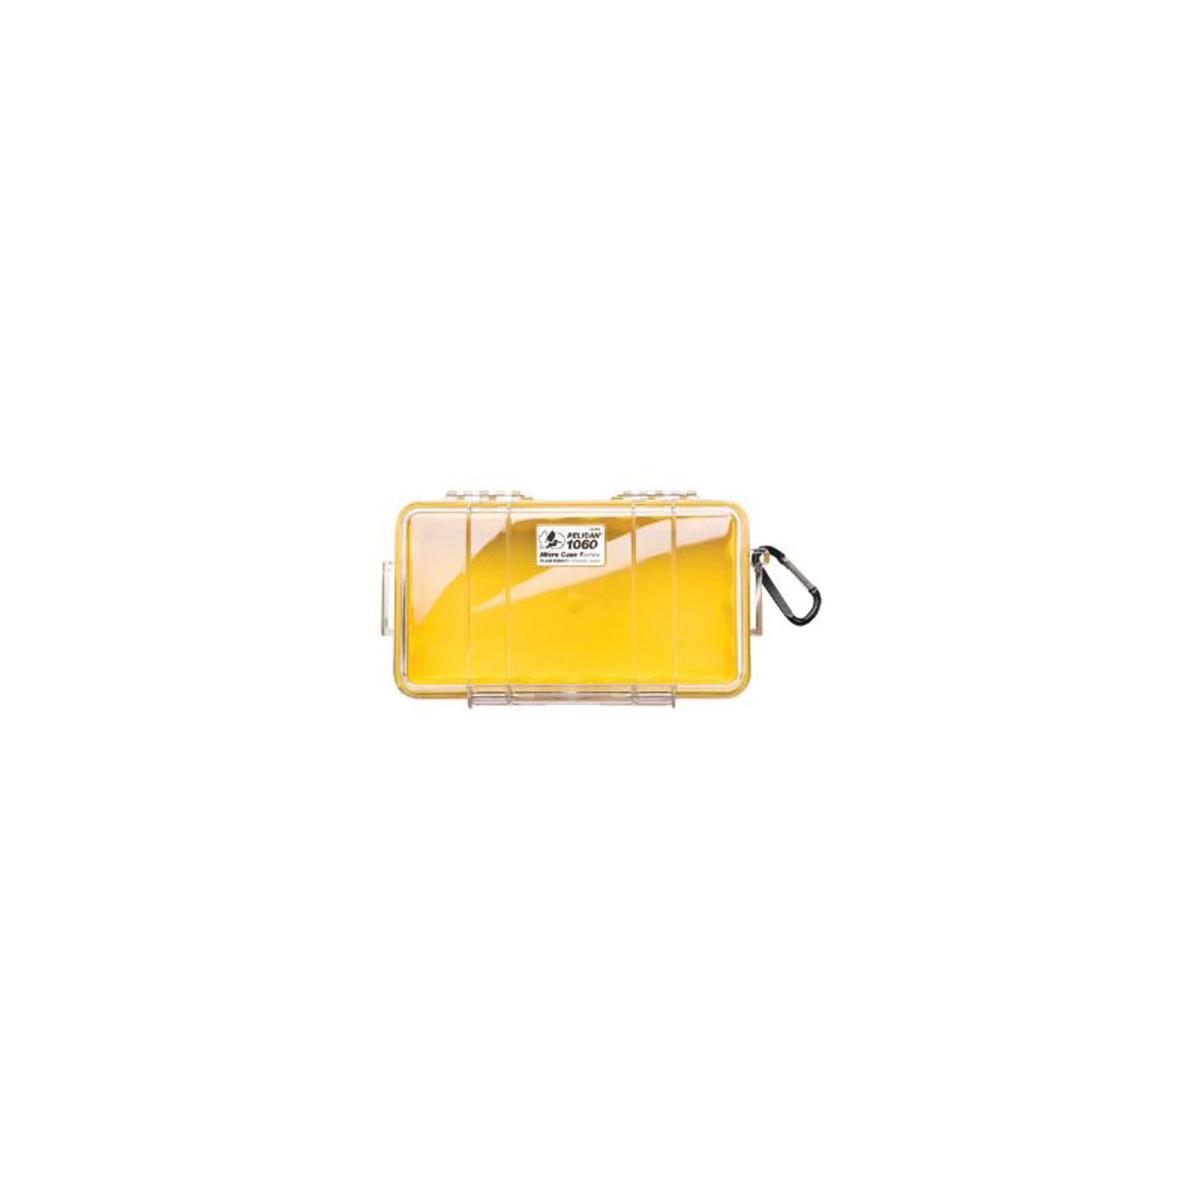 Pelican 1060 Водонепроницаемый микрочехол, резиновый вкладыш, прозрачный/желтый #1060-027-100